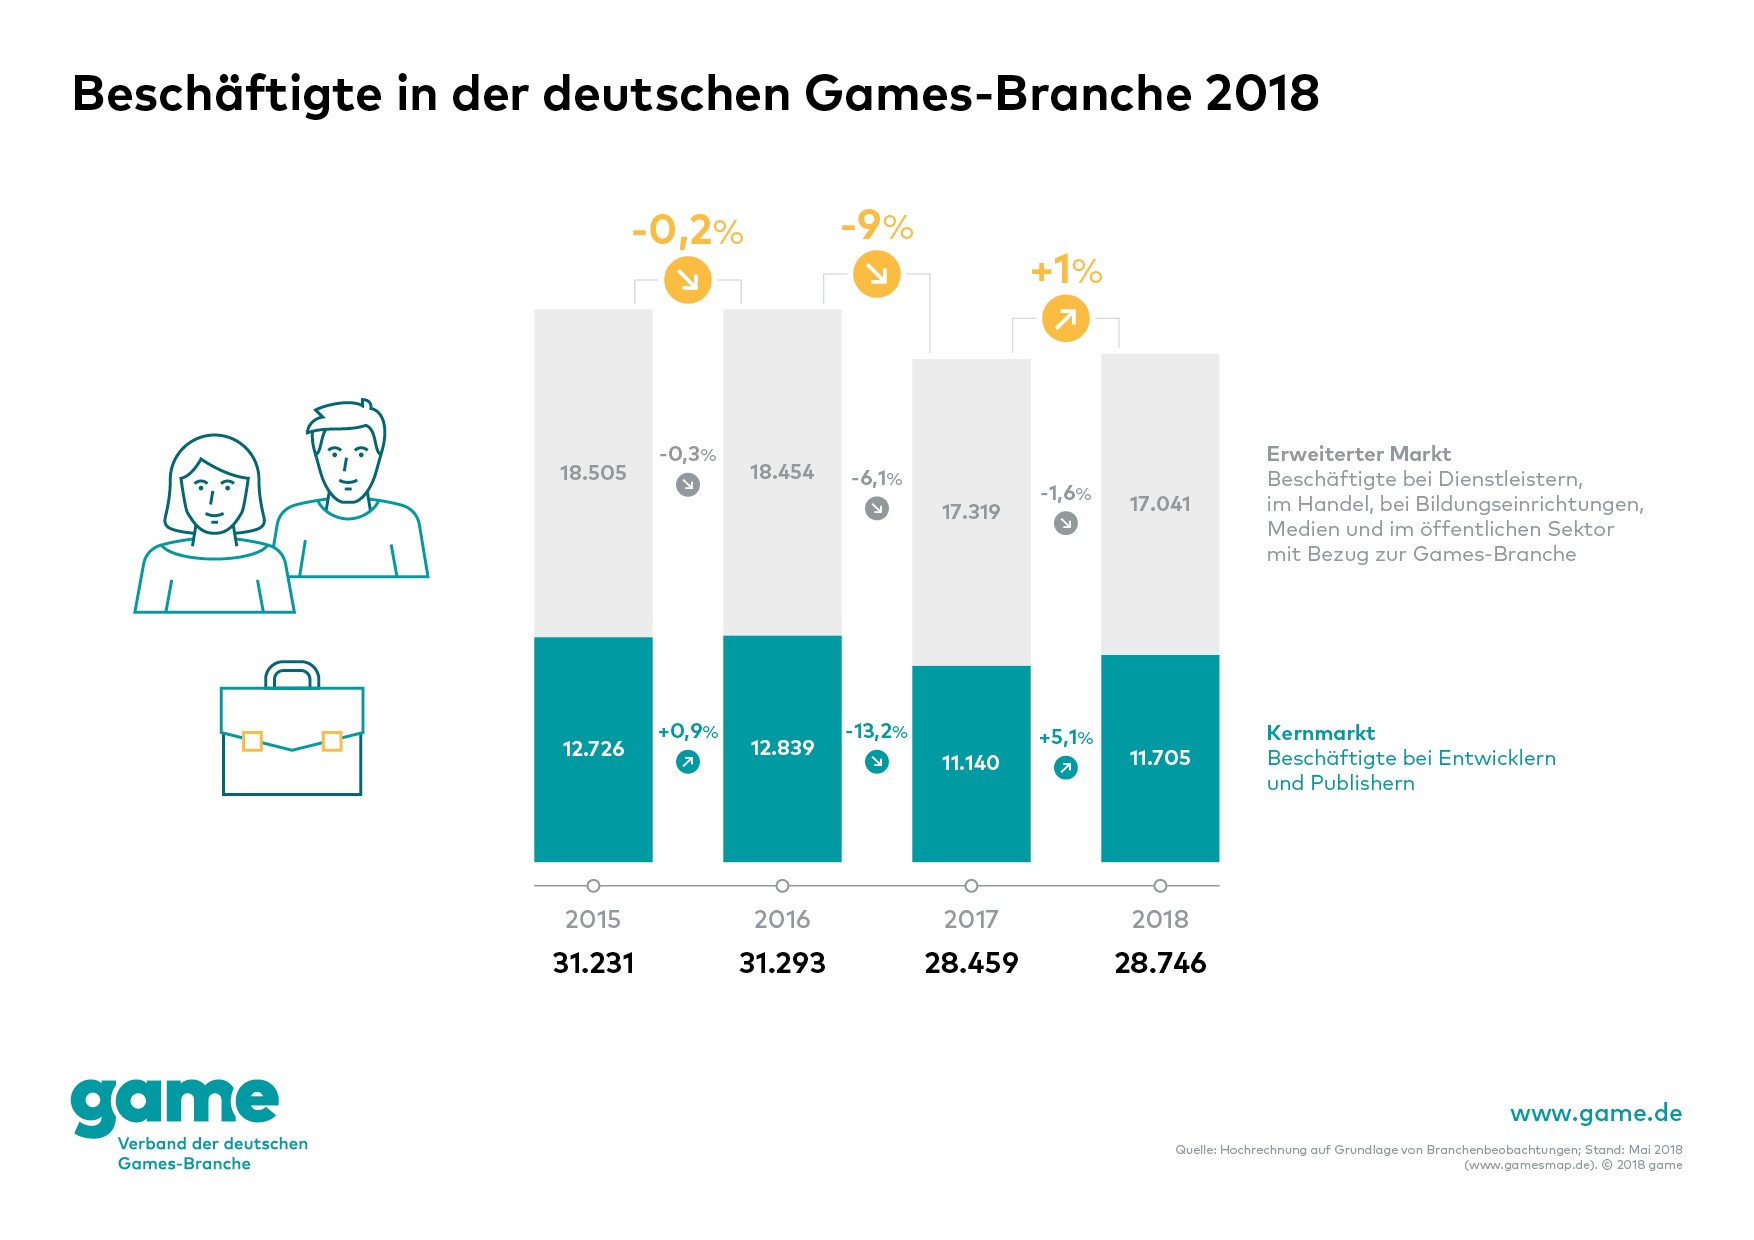 Beschäftigte in der deutschen Gamesbranche 2015-2018